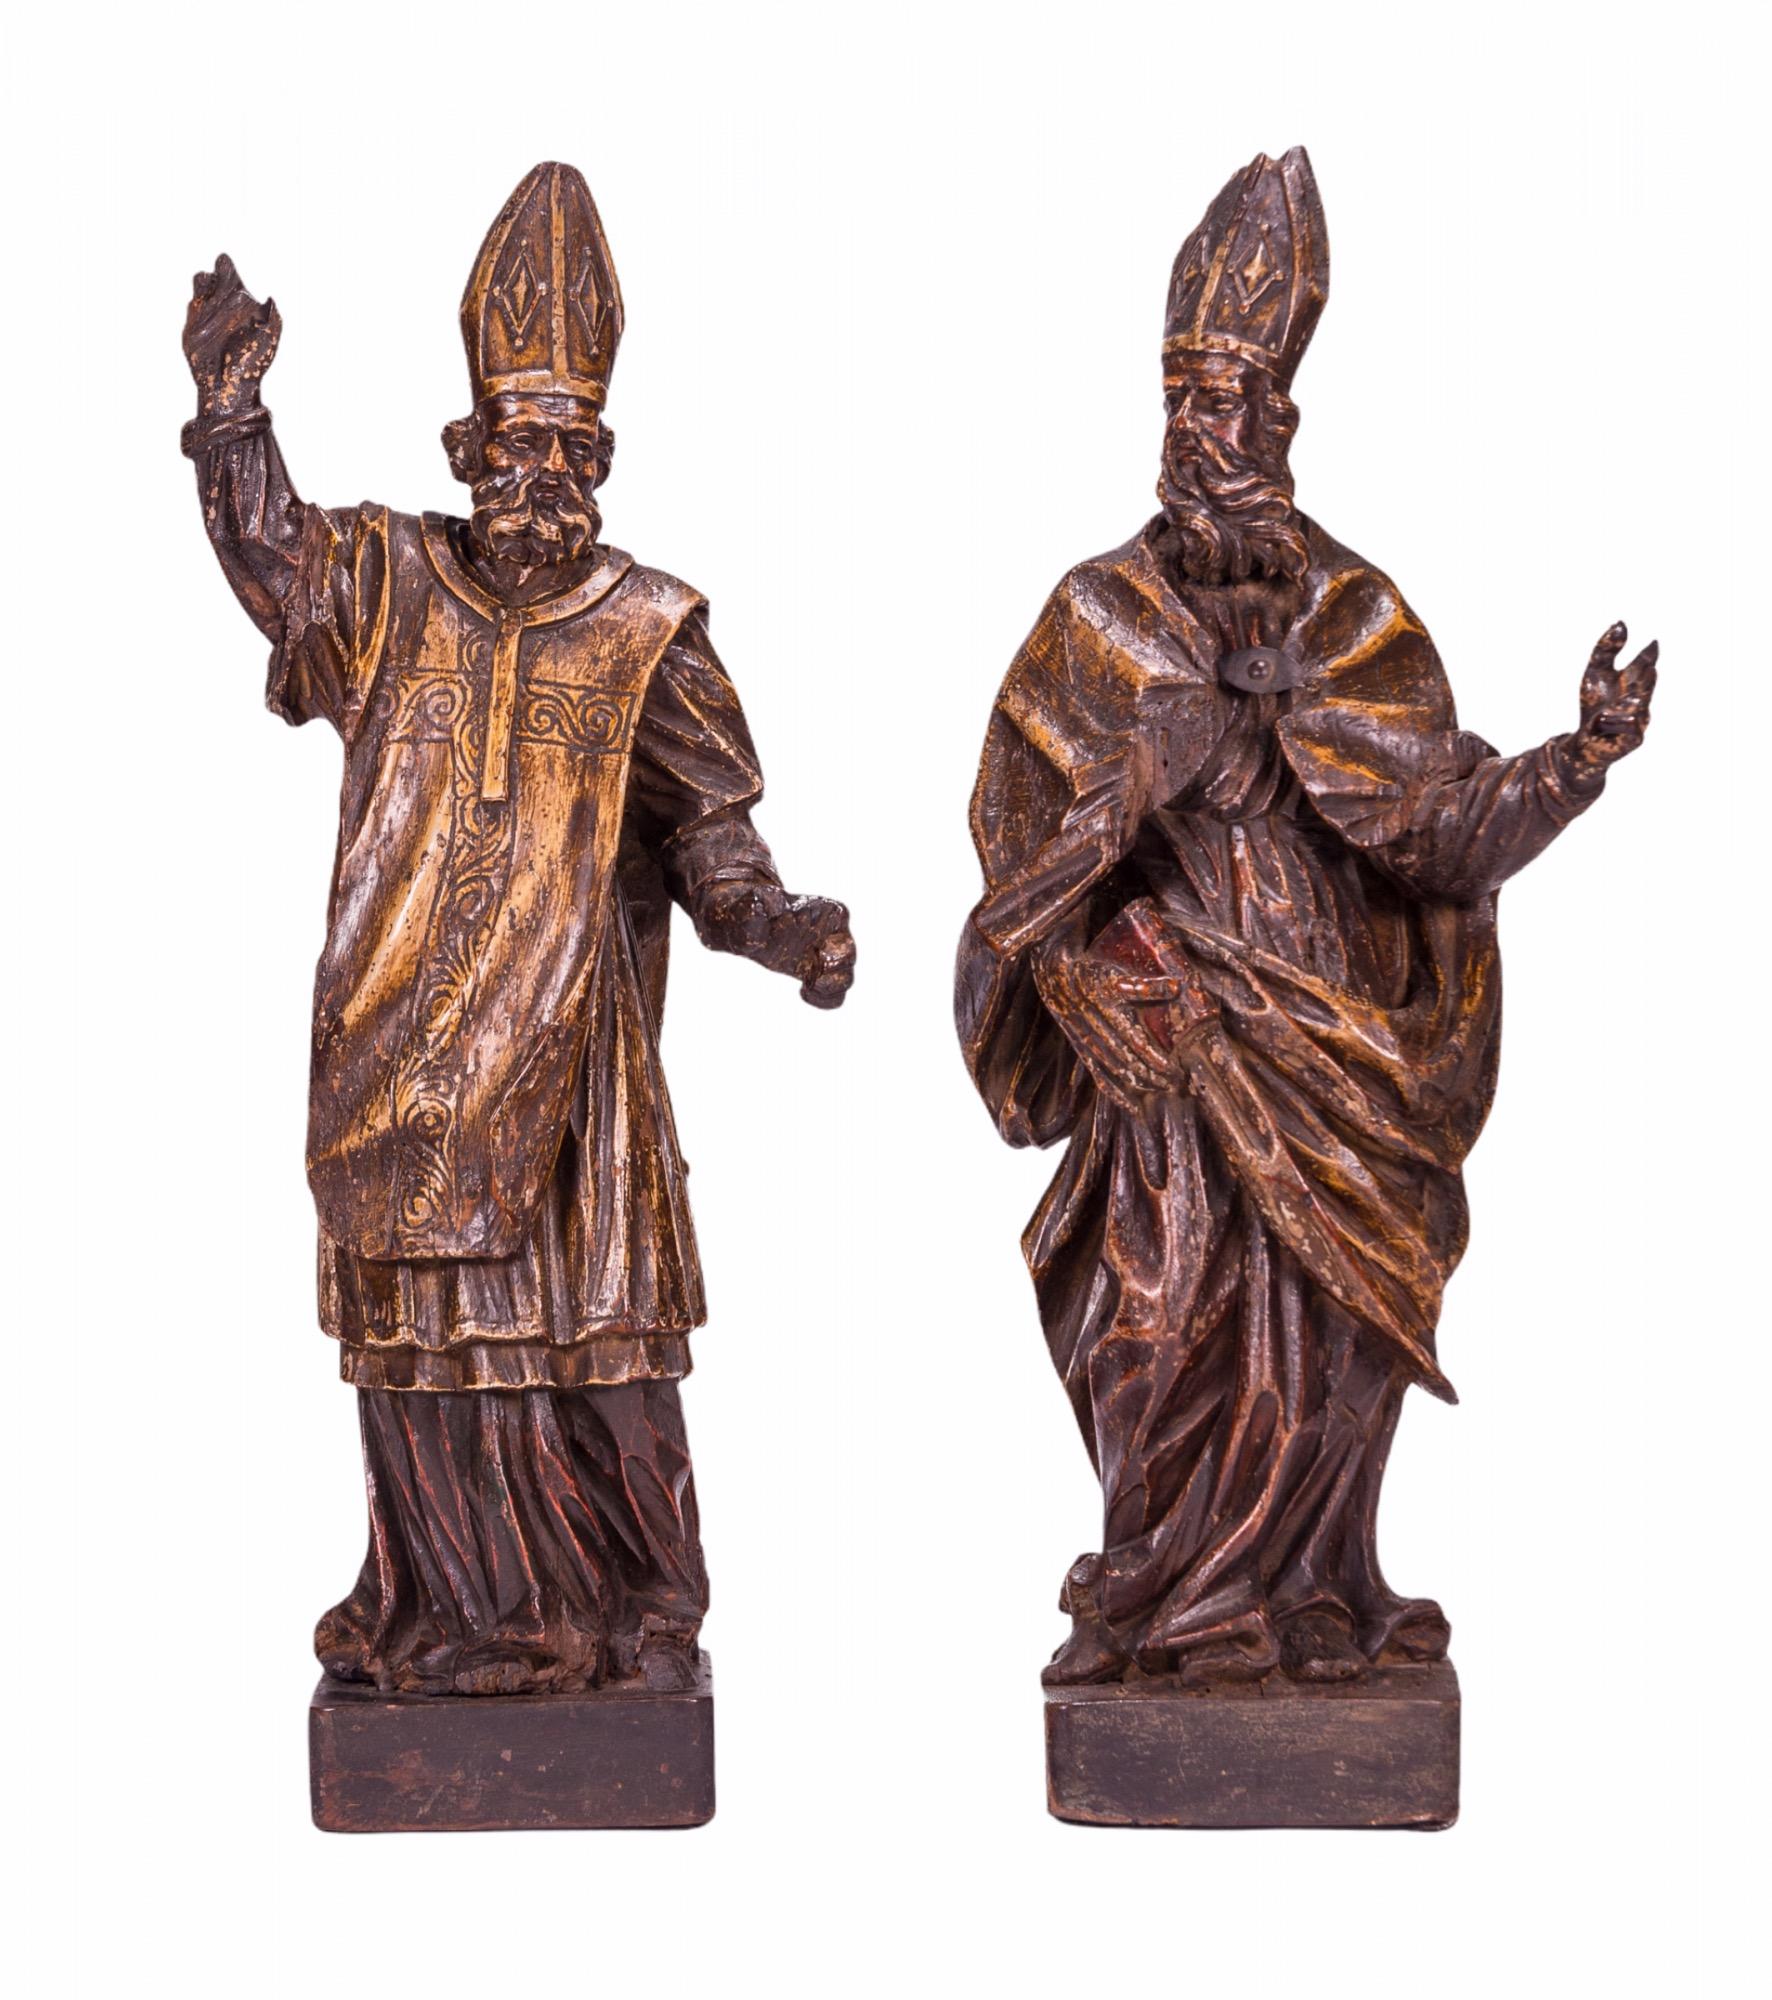 Zwei aus Holz geschnitzte Figuren aus dem 16. Jahrhundert, die den heiligen Ambrosius, Erzbischof von Mailand, und den heiligen Augustinus, Bischof von Hippo, darstellen, zwei der vier ursprünglichen Doktoren der Kirche.